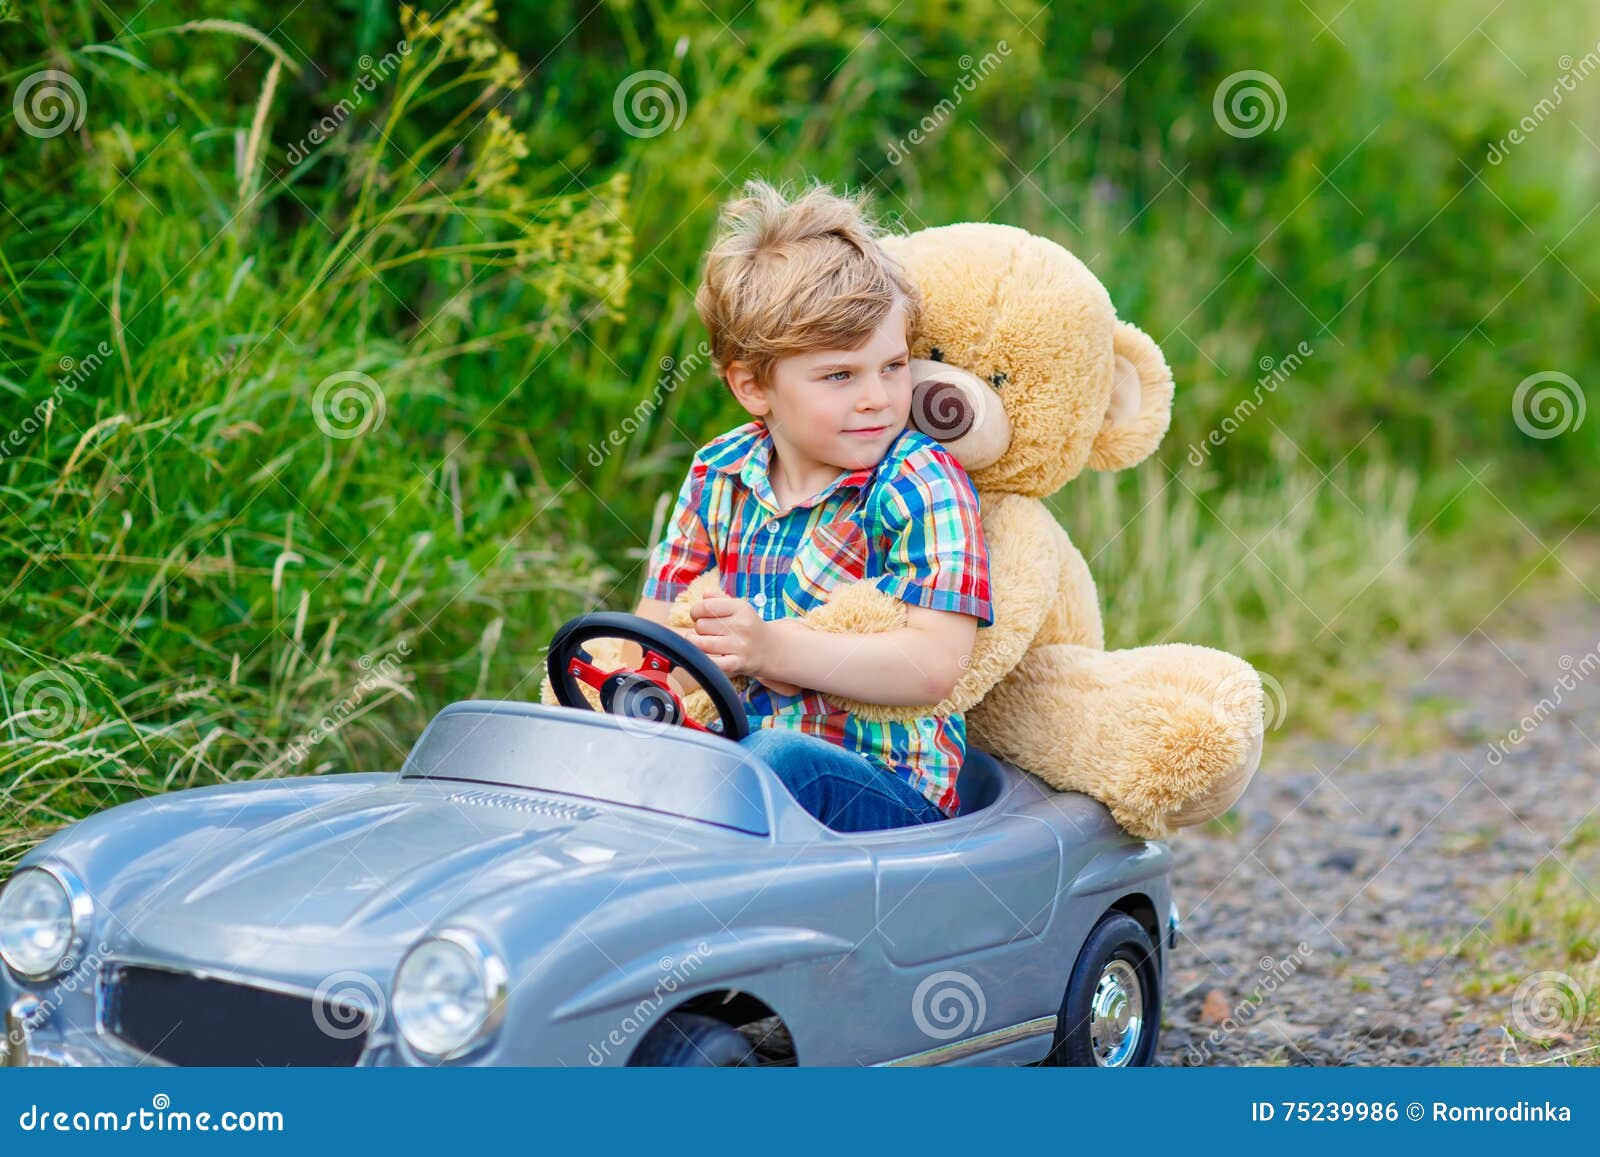 Песни мальчик на машине. Фотосессия ребенок на машине большая. Фотосессия ребенка на машинке игрушечной. Маленькие дети на фоне большой машины. Мальчик катает мишку на машине.